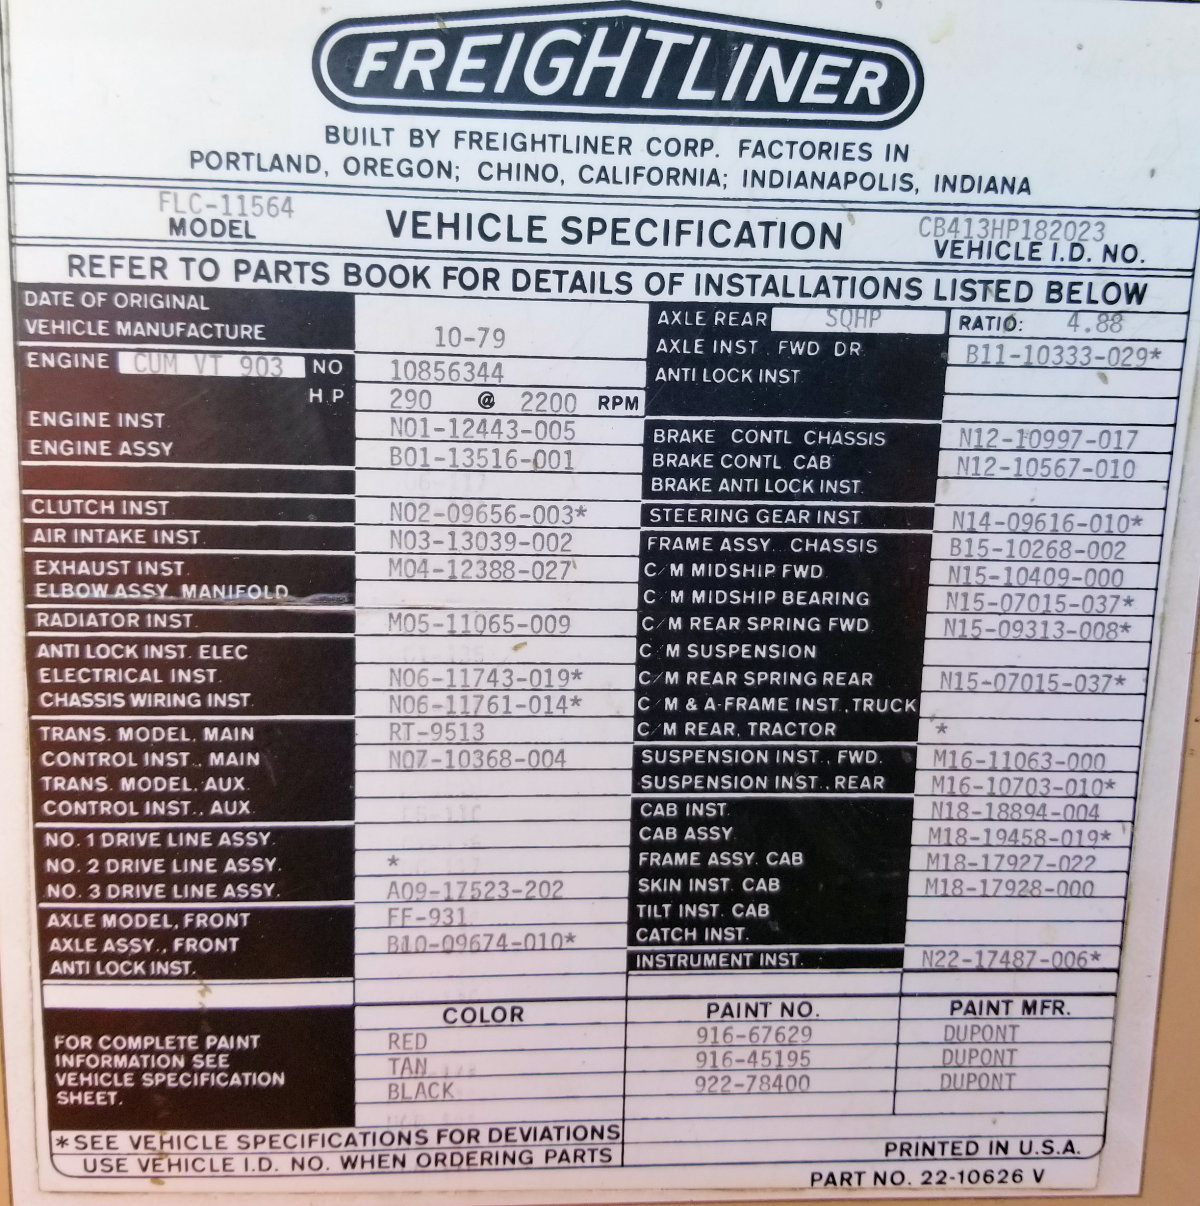 1979 Freightliner Flc-11564 Water Truck)